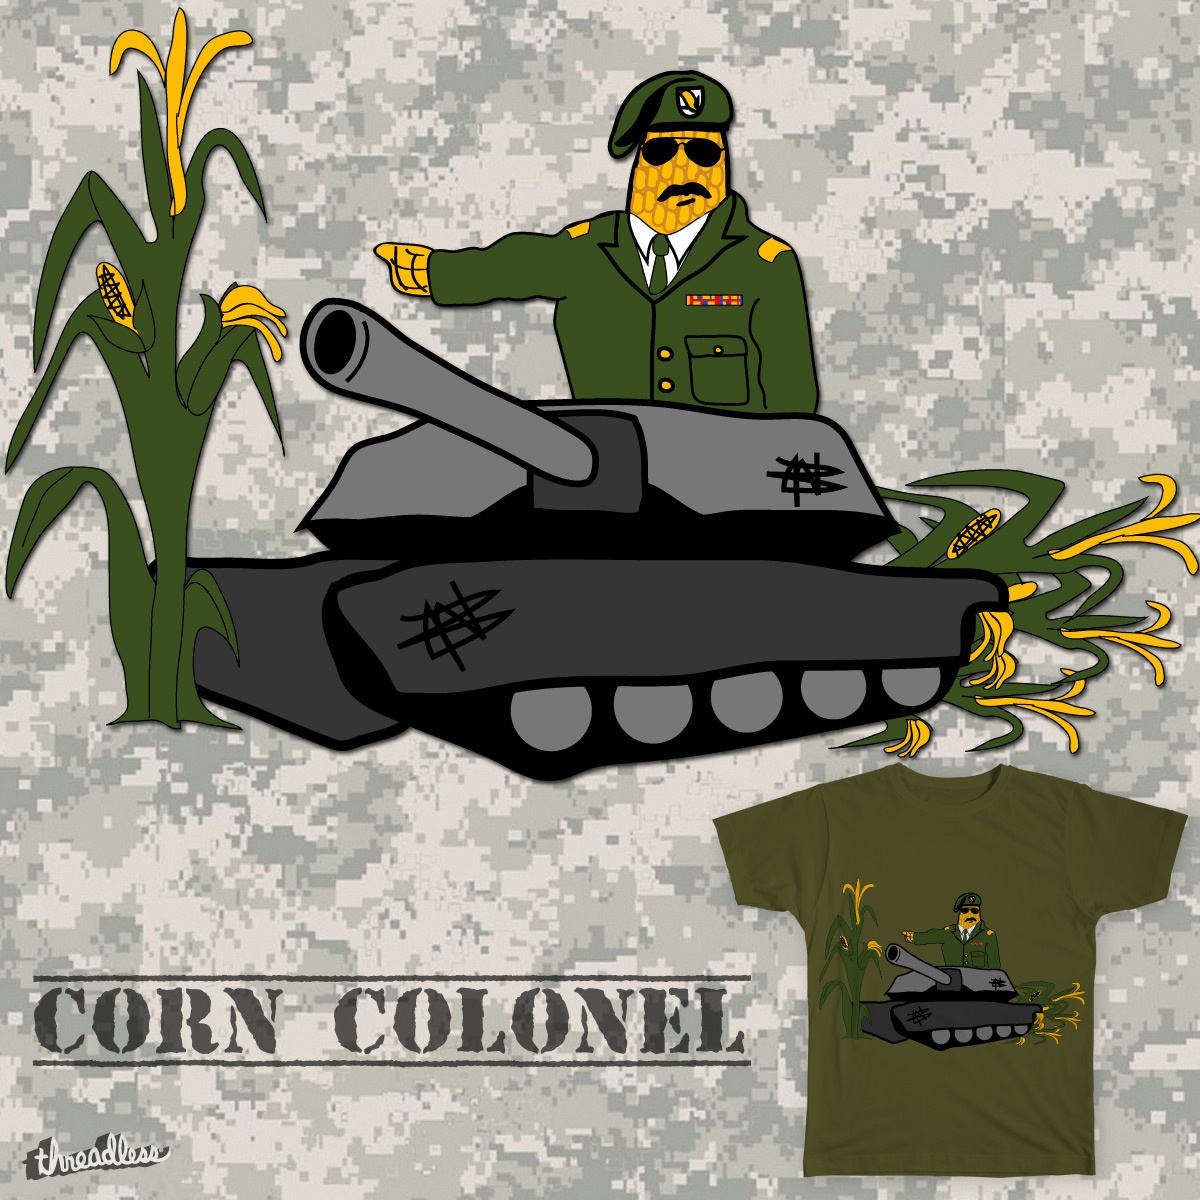 Corn Colonel Tee Design